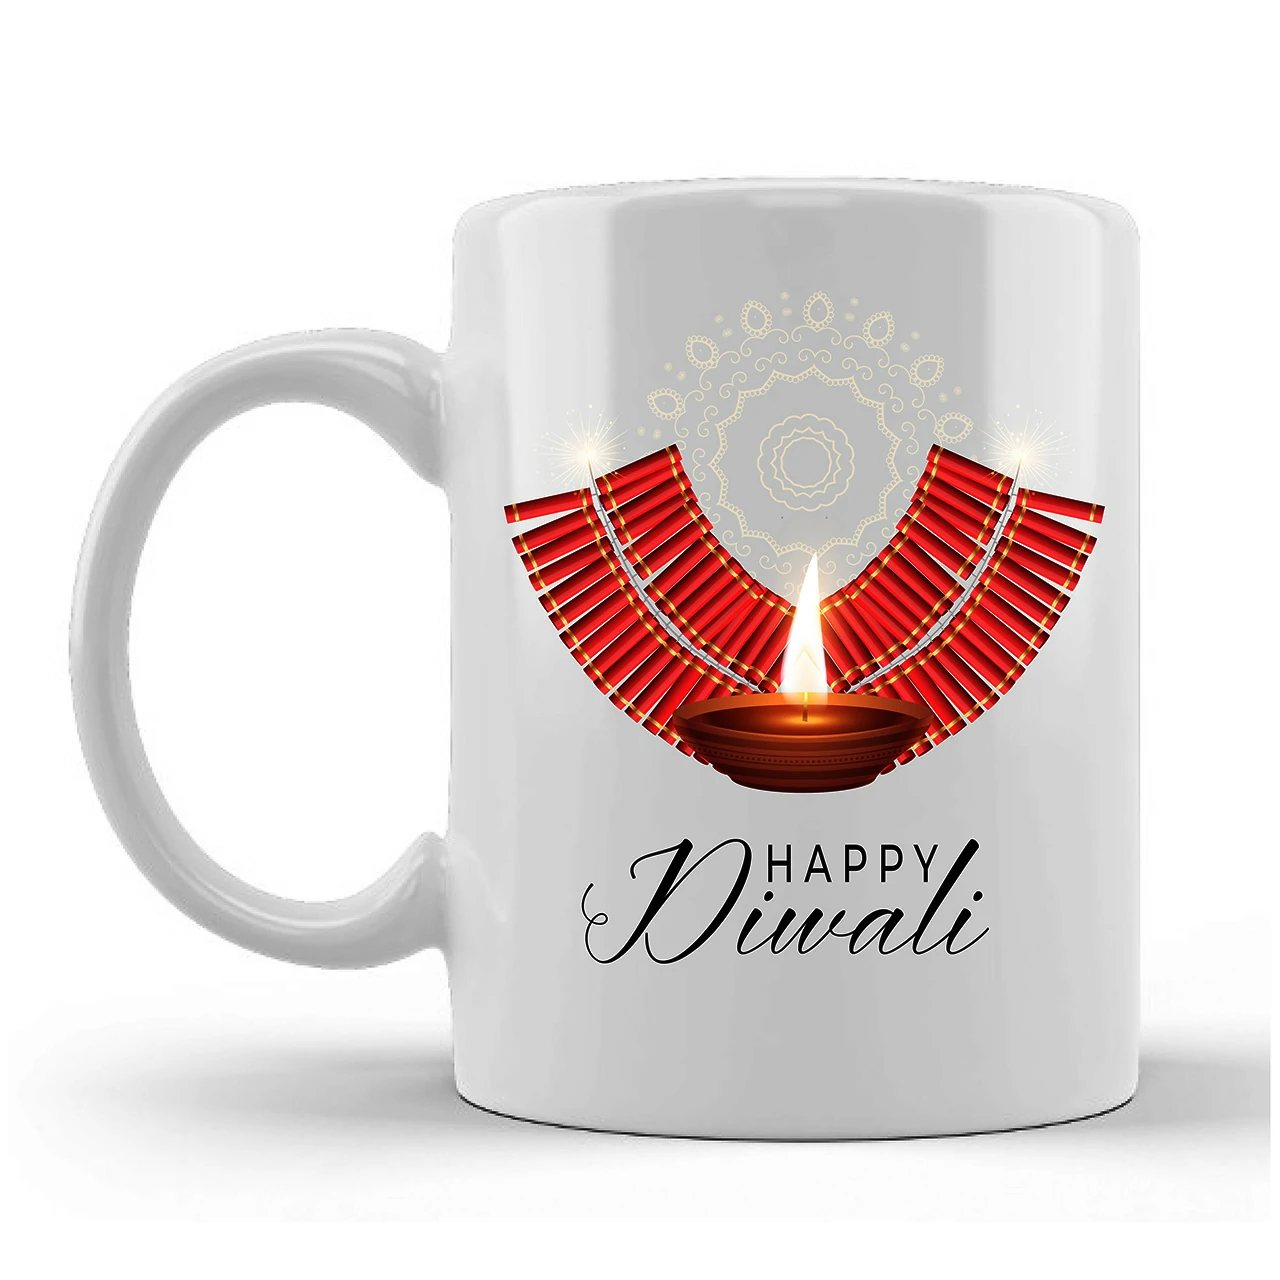 Happy Diwali Printed Ceramic Mug Gifts for Diwali Gifts Diwali Gift Items Diwali Gifts for Friends Diwali Gifts for Friends and Family Gifts for Diwali